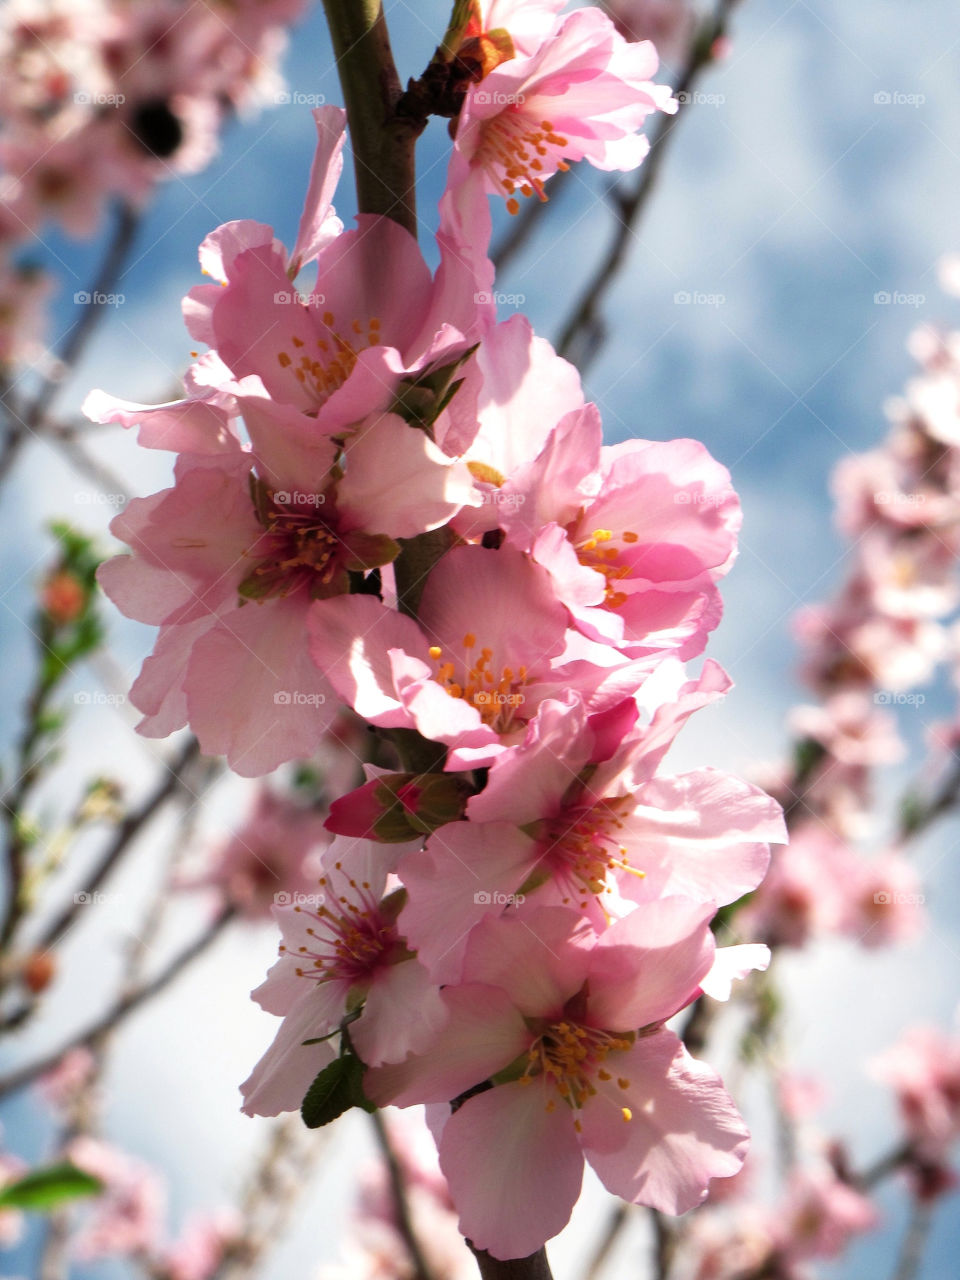 spring pink flower blossom by taniakarabaev